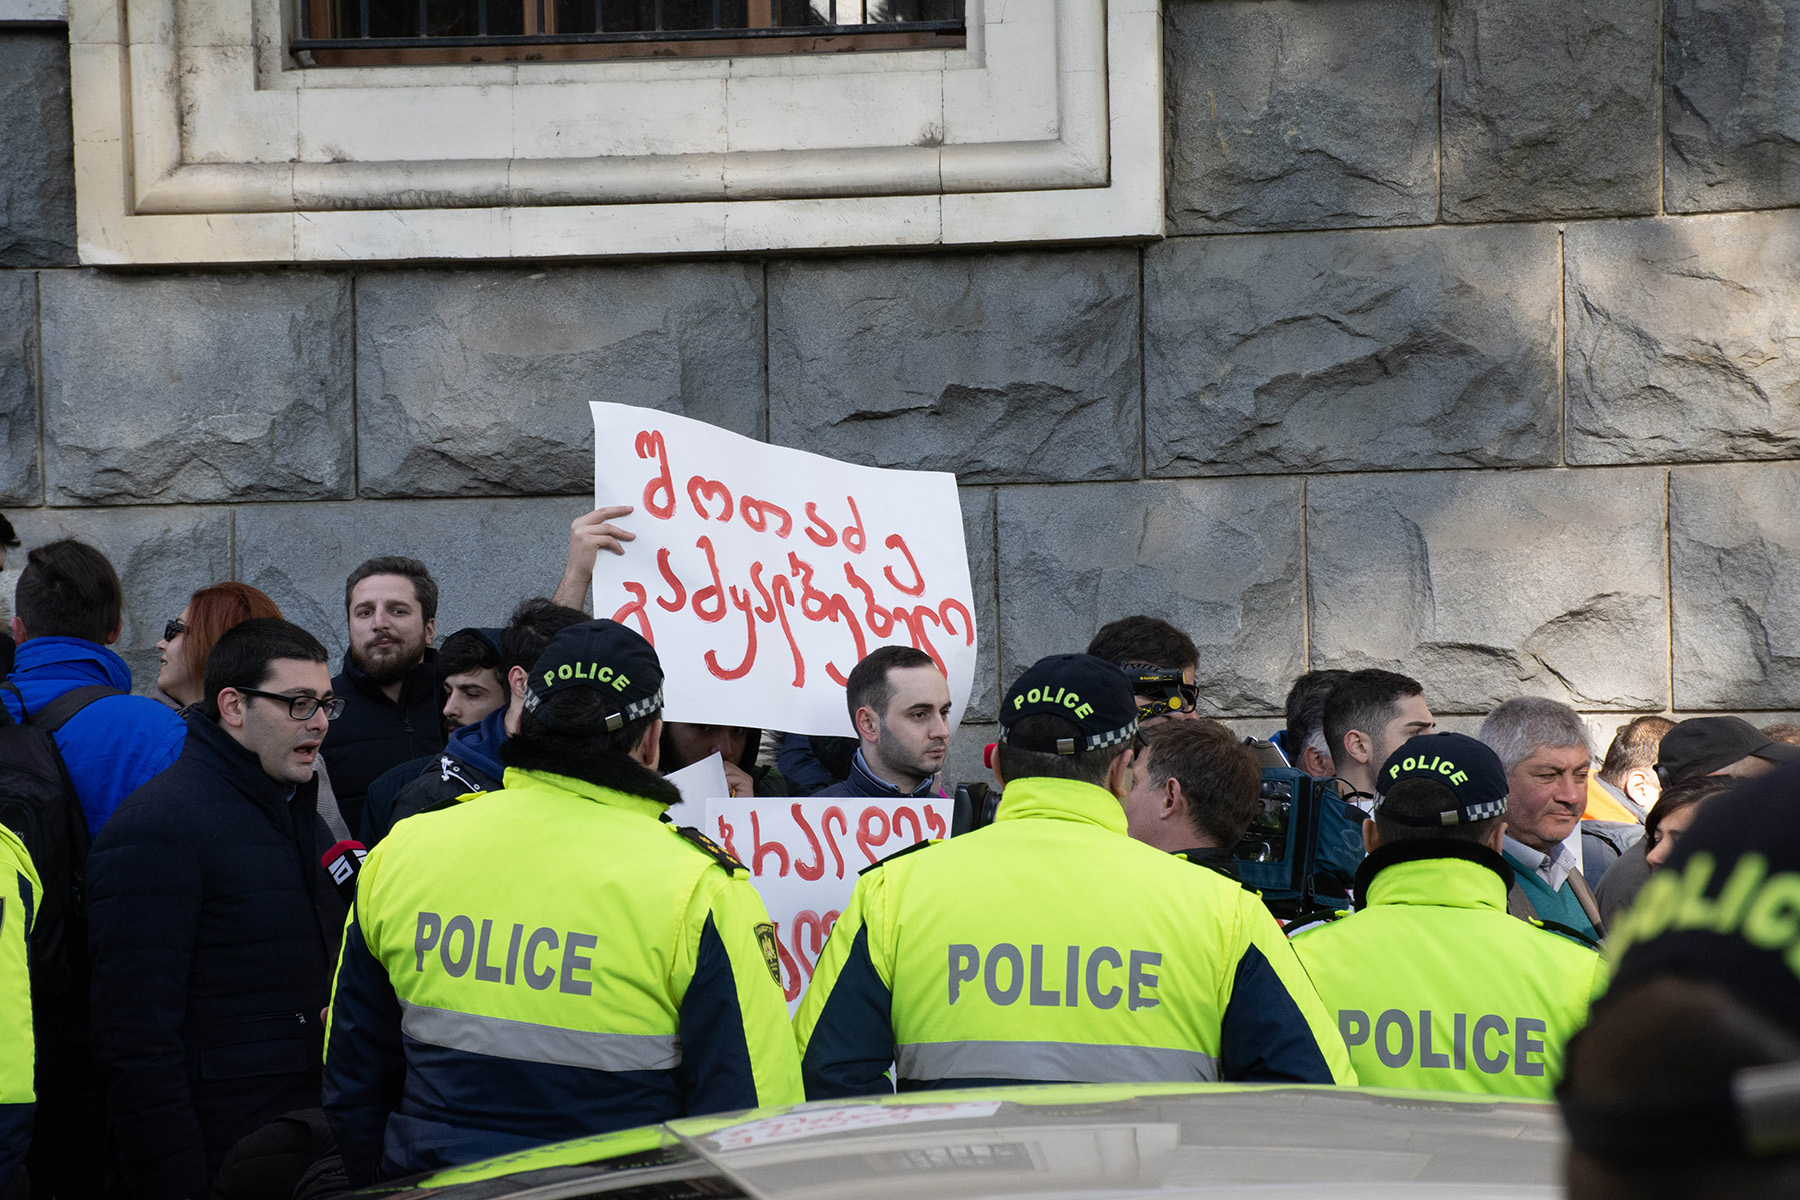 A protest sign reading ‘Shotadze the fraud’. Photo: Shota Kincha/OC Media.